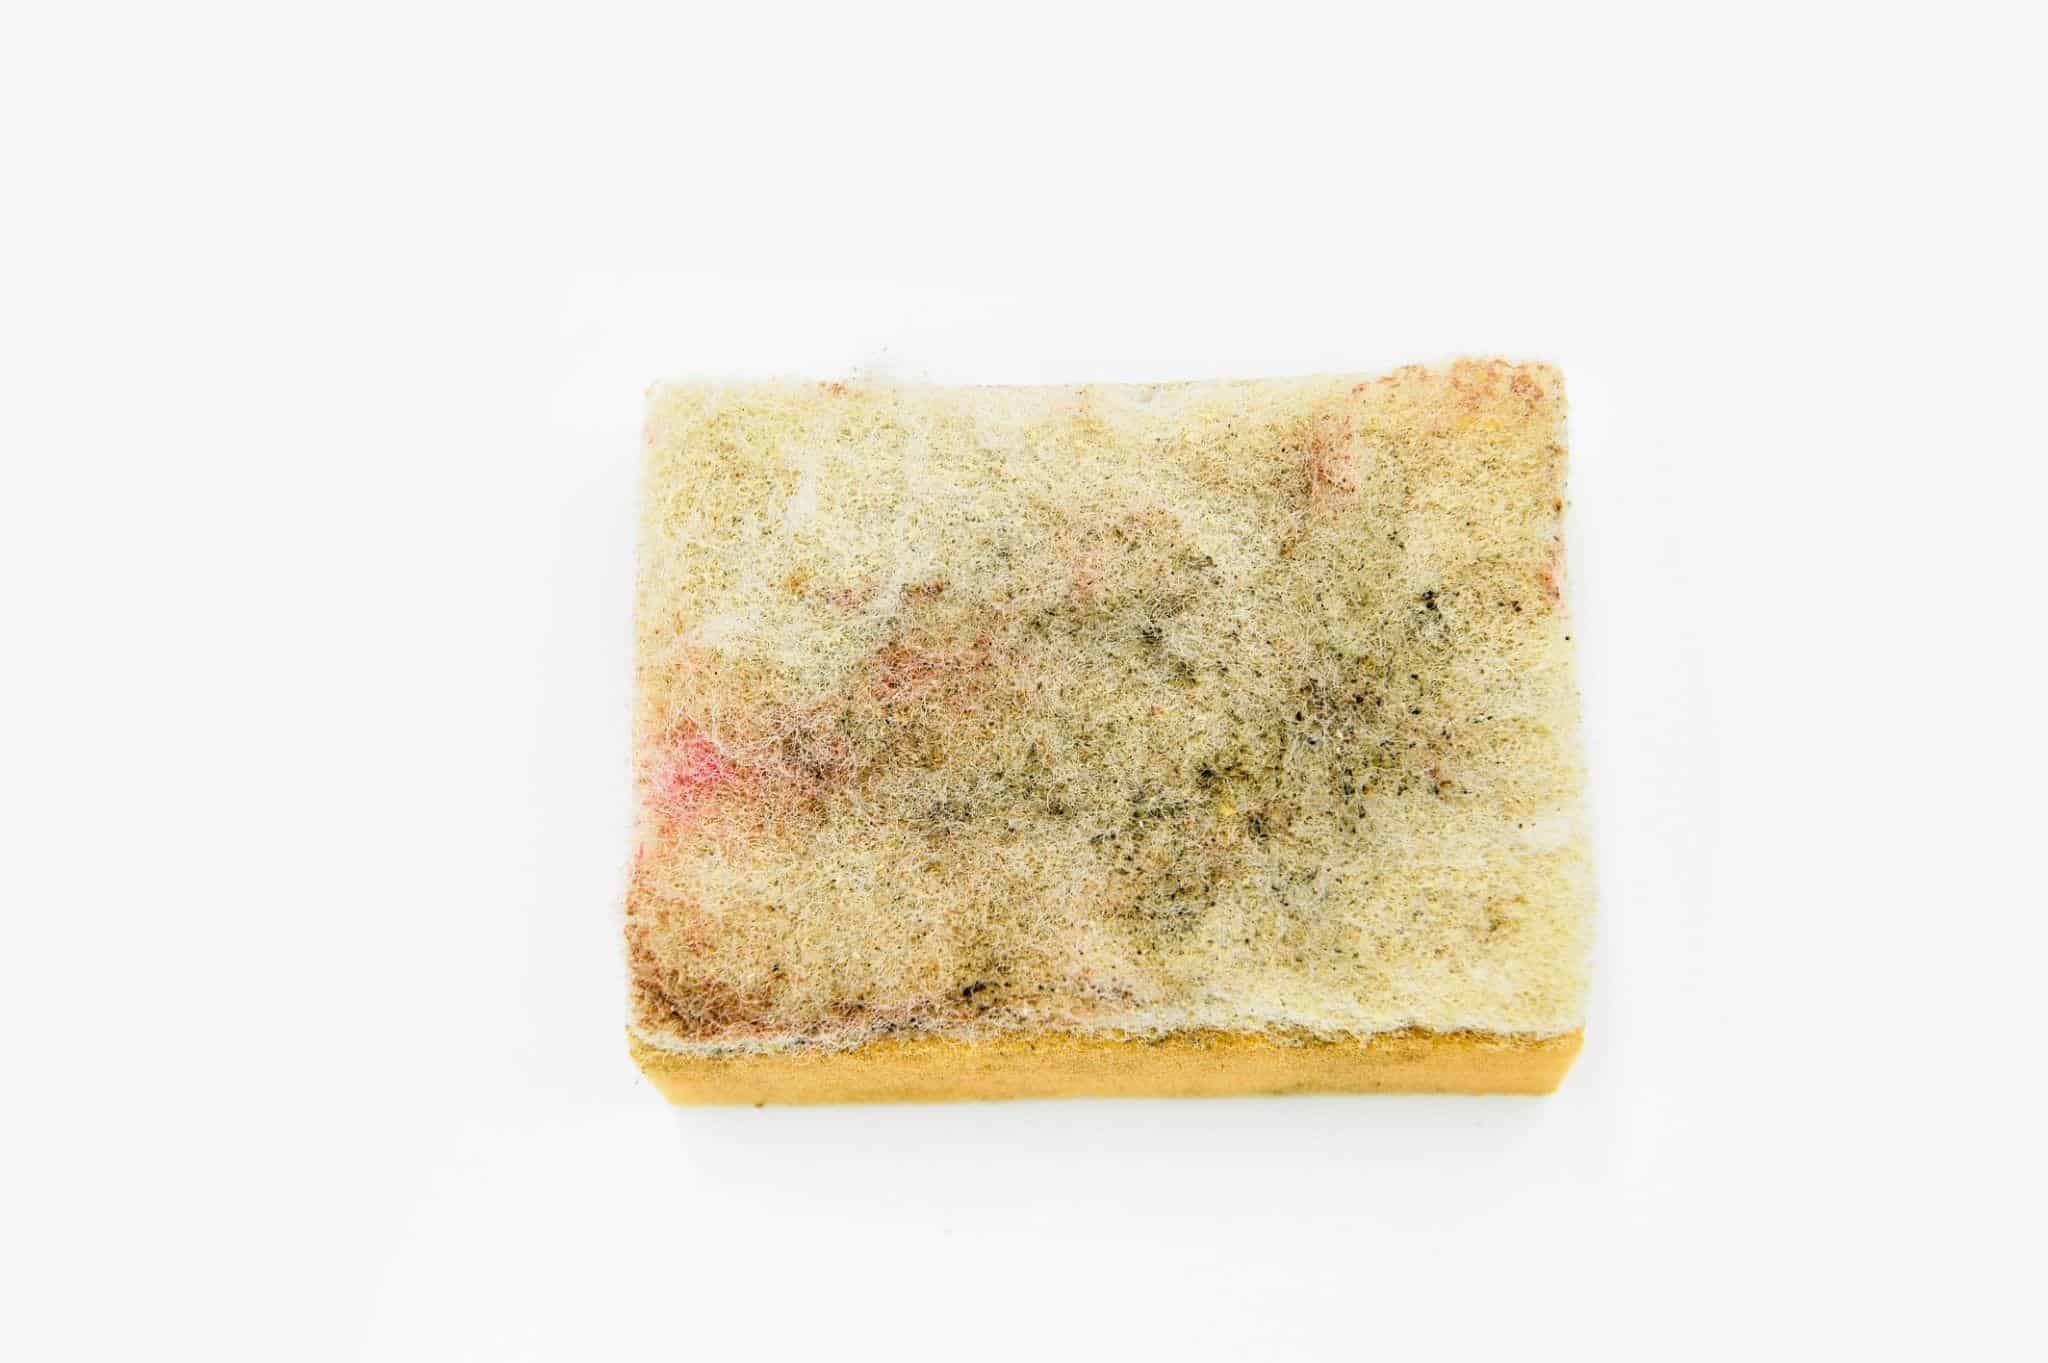 Photo of a moldy sponge